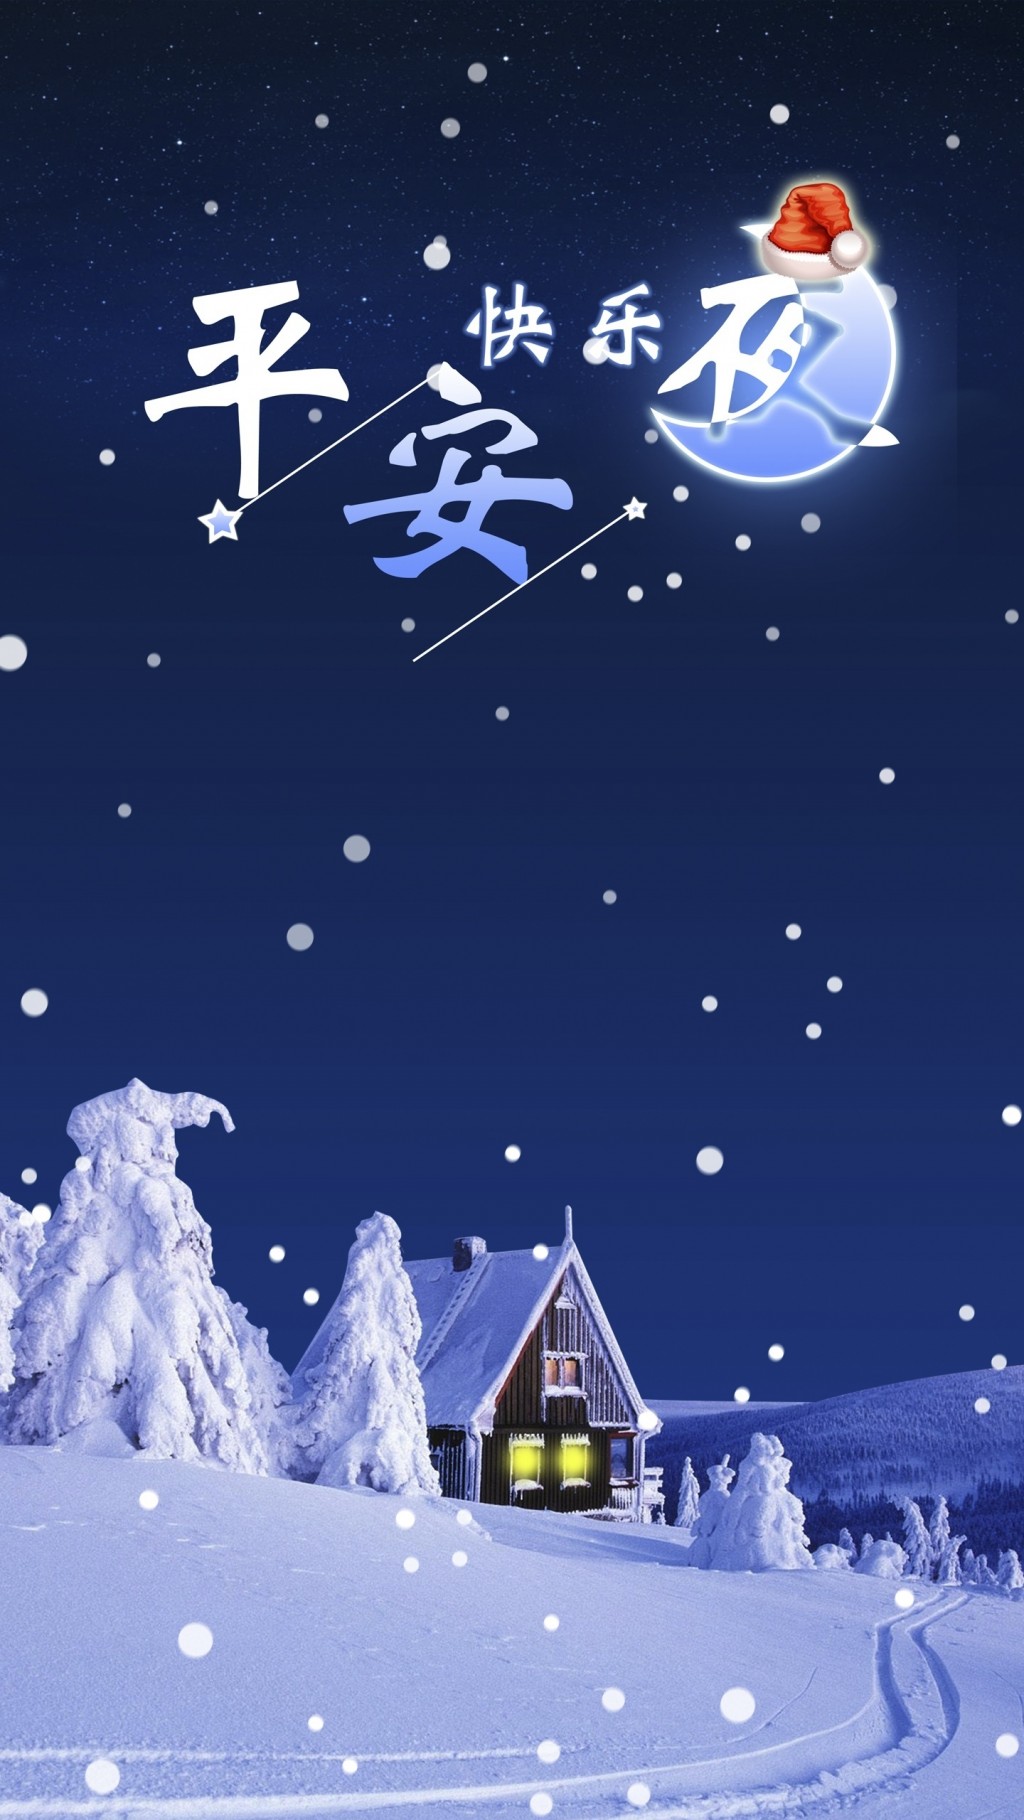 圣诞节前夕平安夜的浪漫插画手机壁纸